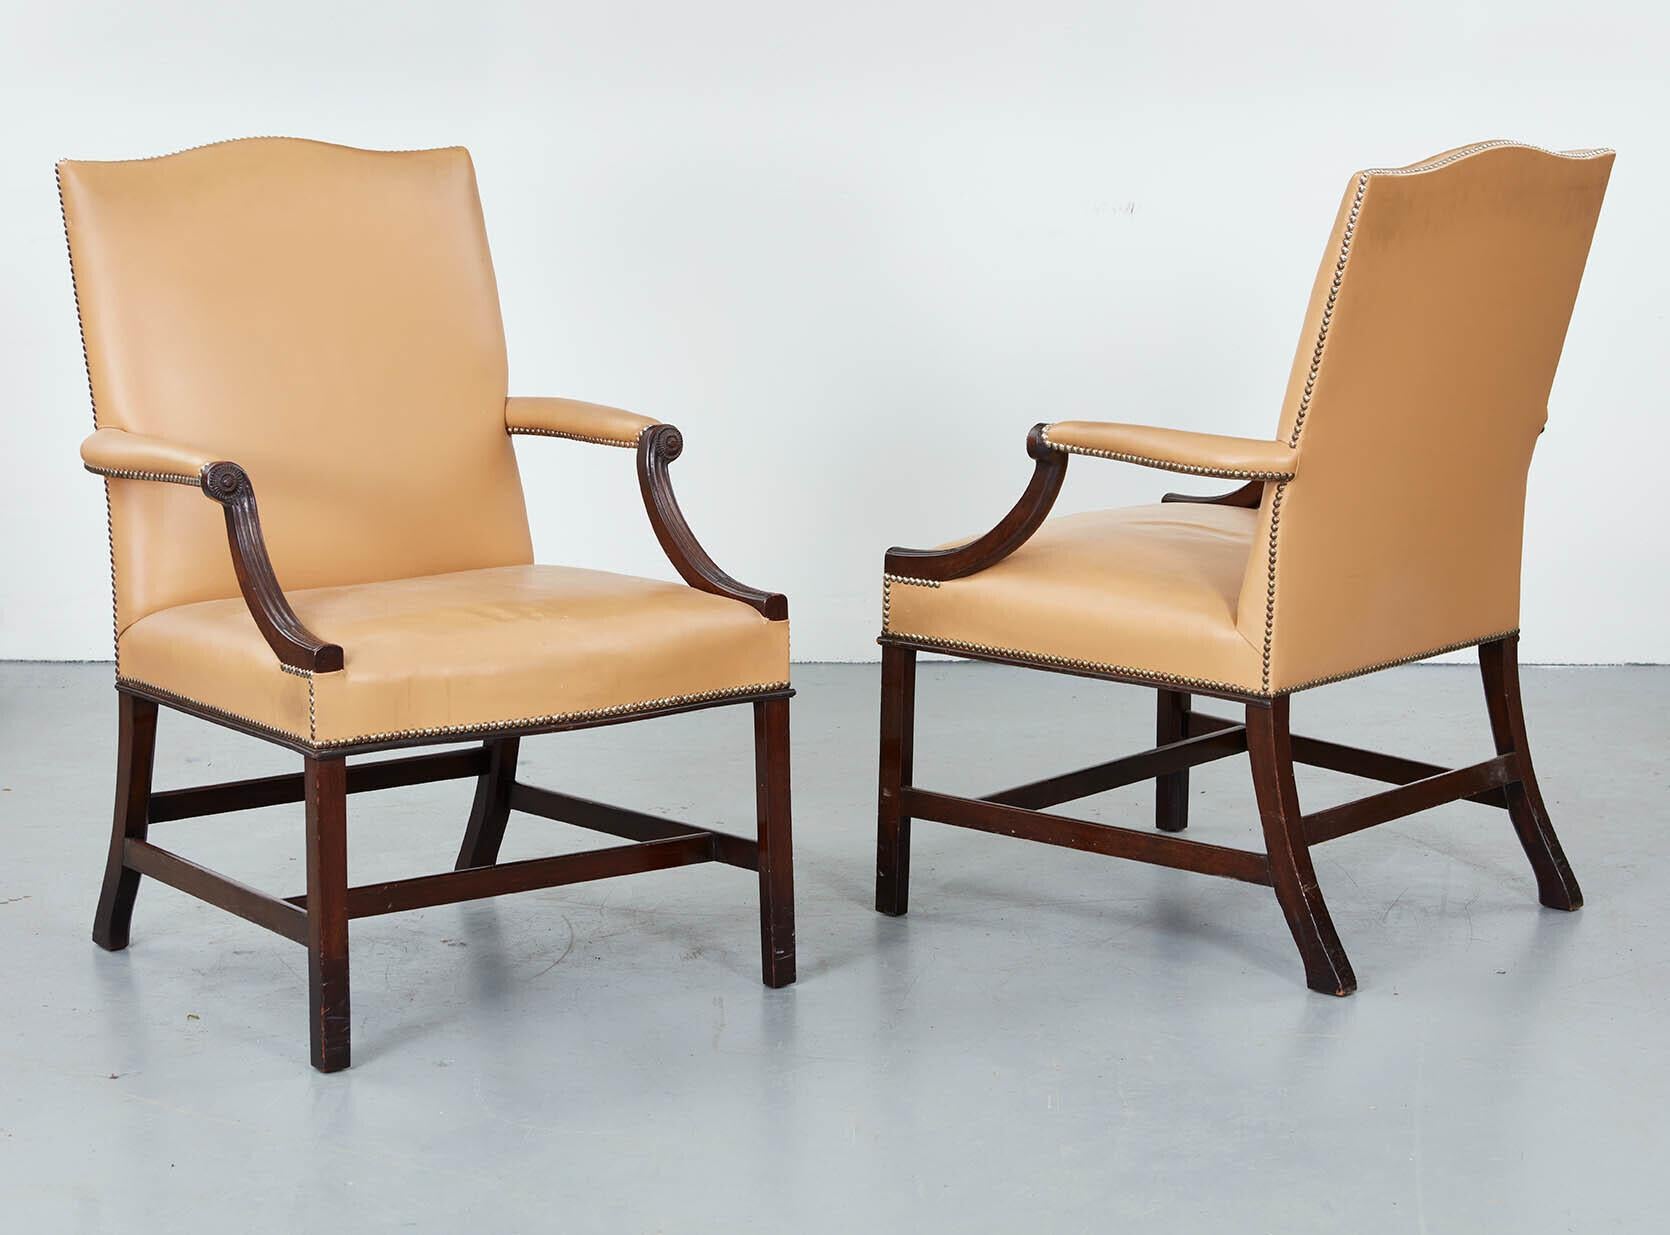 Une paire de chaises Gainsborough de style géorgien des années 1920, en acajou, tapissées de cuir beige avec des clous fermés, ayant des supports d'accoudoirs moulés et reposant sur des pieds sculptés et moulés joints par des civières, ayant une